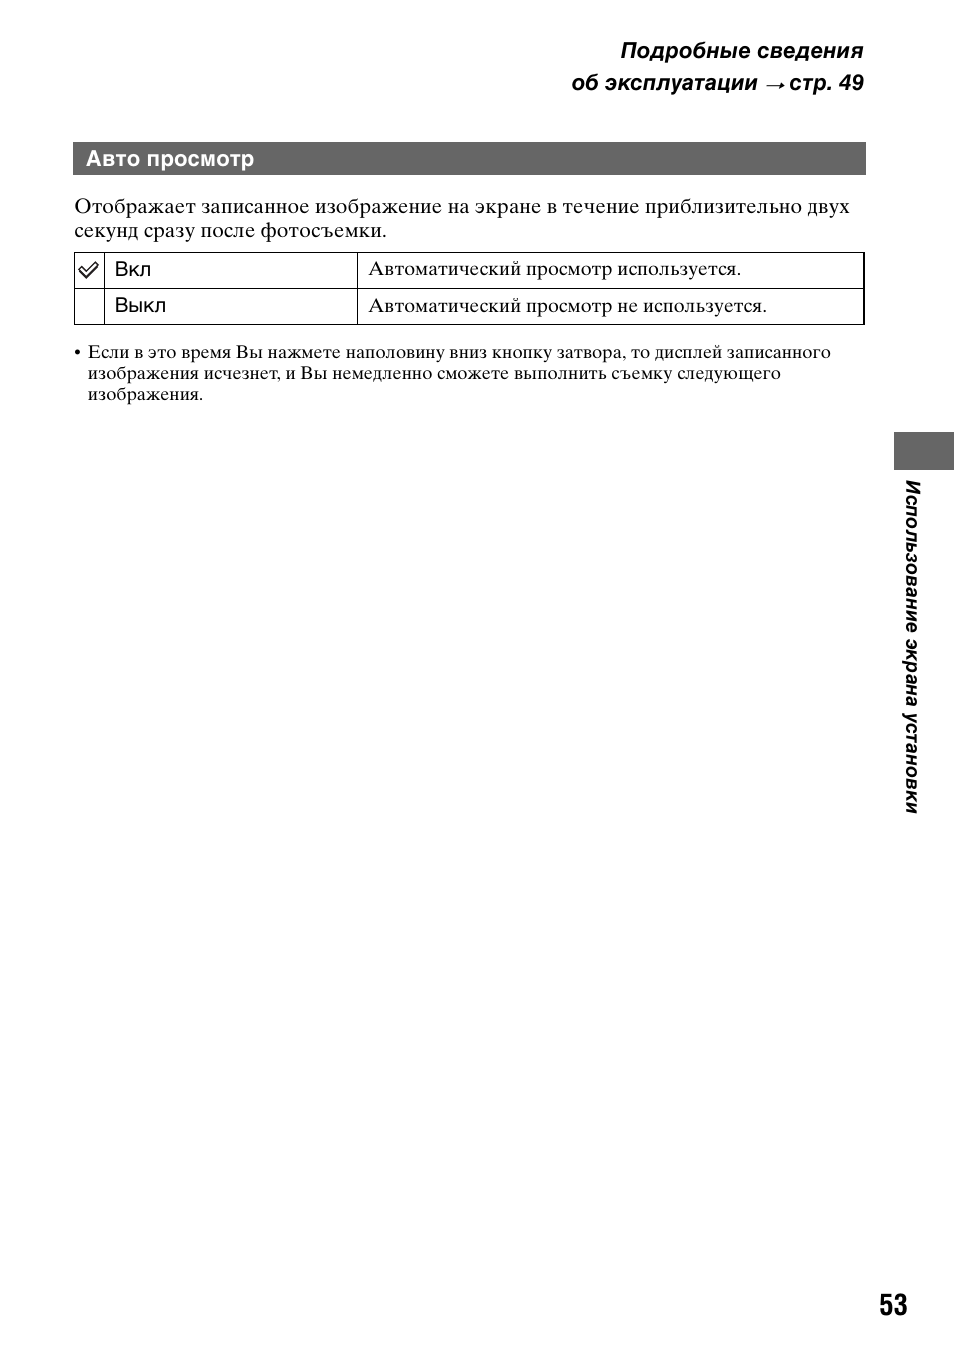 Авто просмотр | Инструкция по эксплуатации Sony DSC-T5 | Страница 53 / 123